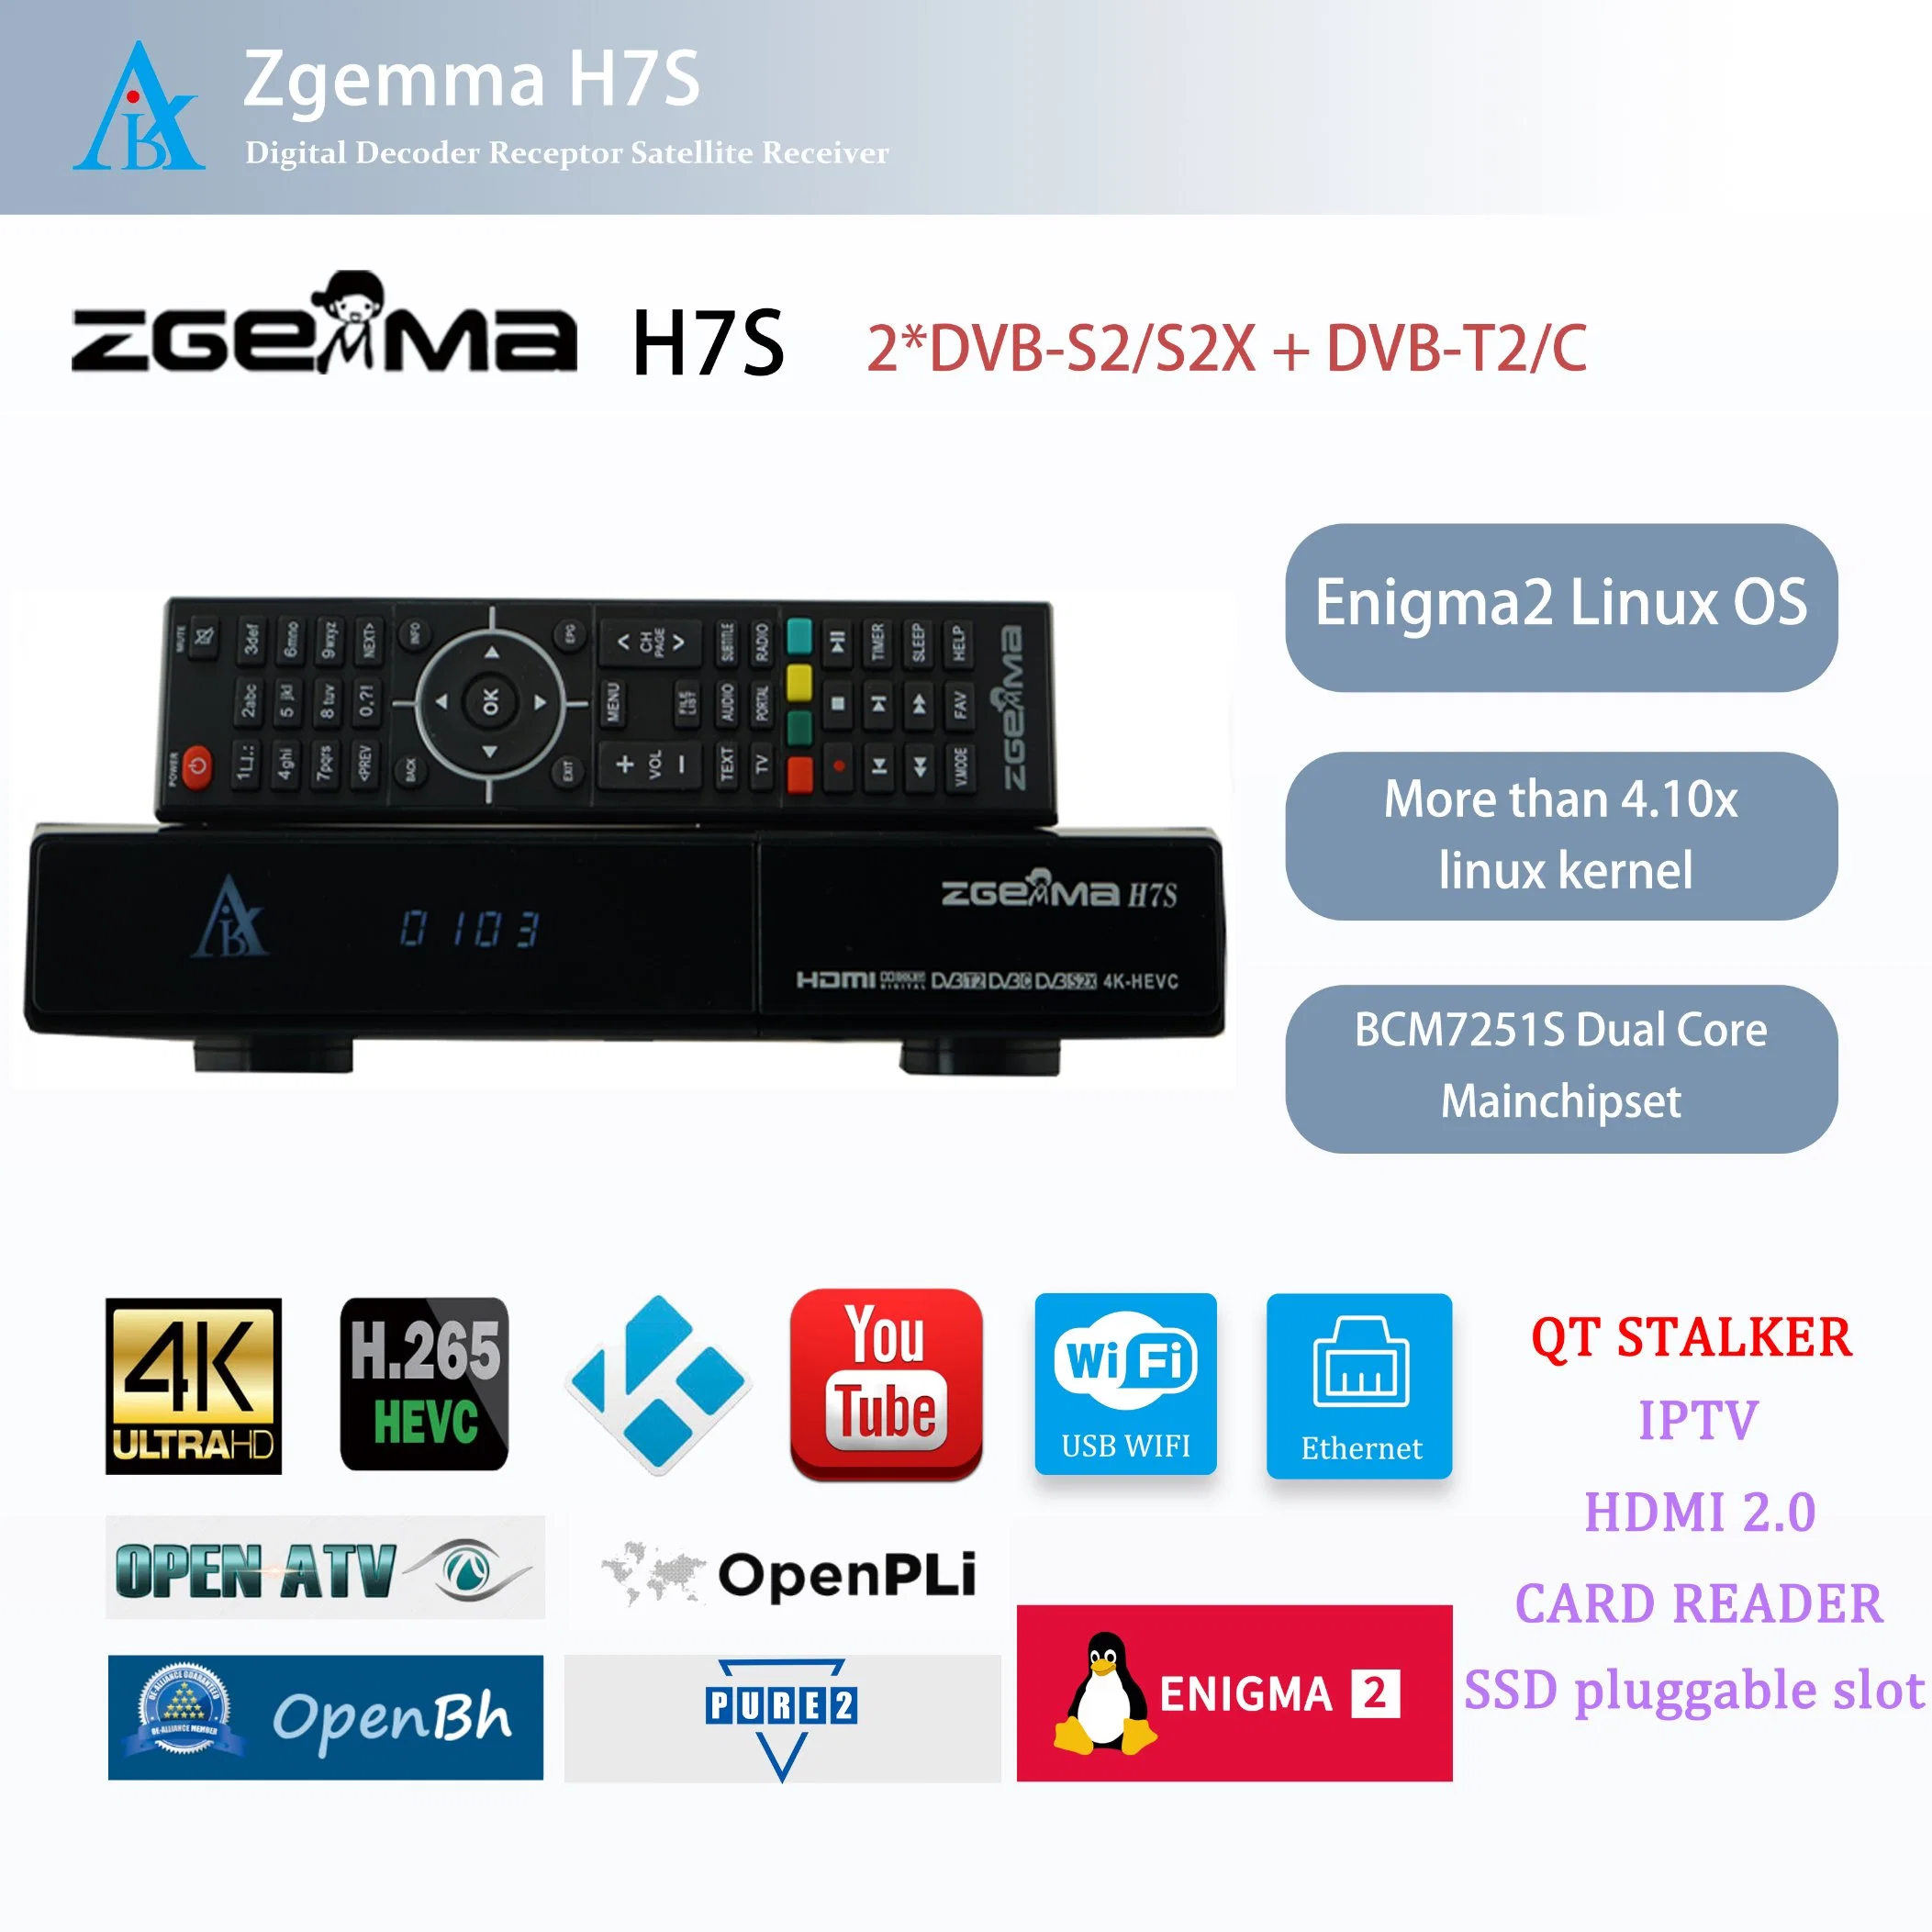 Спутниковый ресивер Zgemma H7s - 4K UHD, Enigma2 Linux OS, двойной тюнер DVB-S2/S2X + DVB-T2/C.